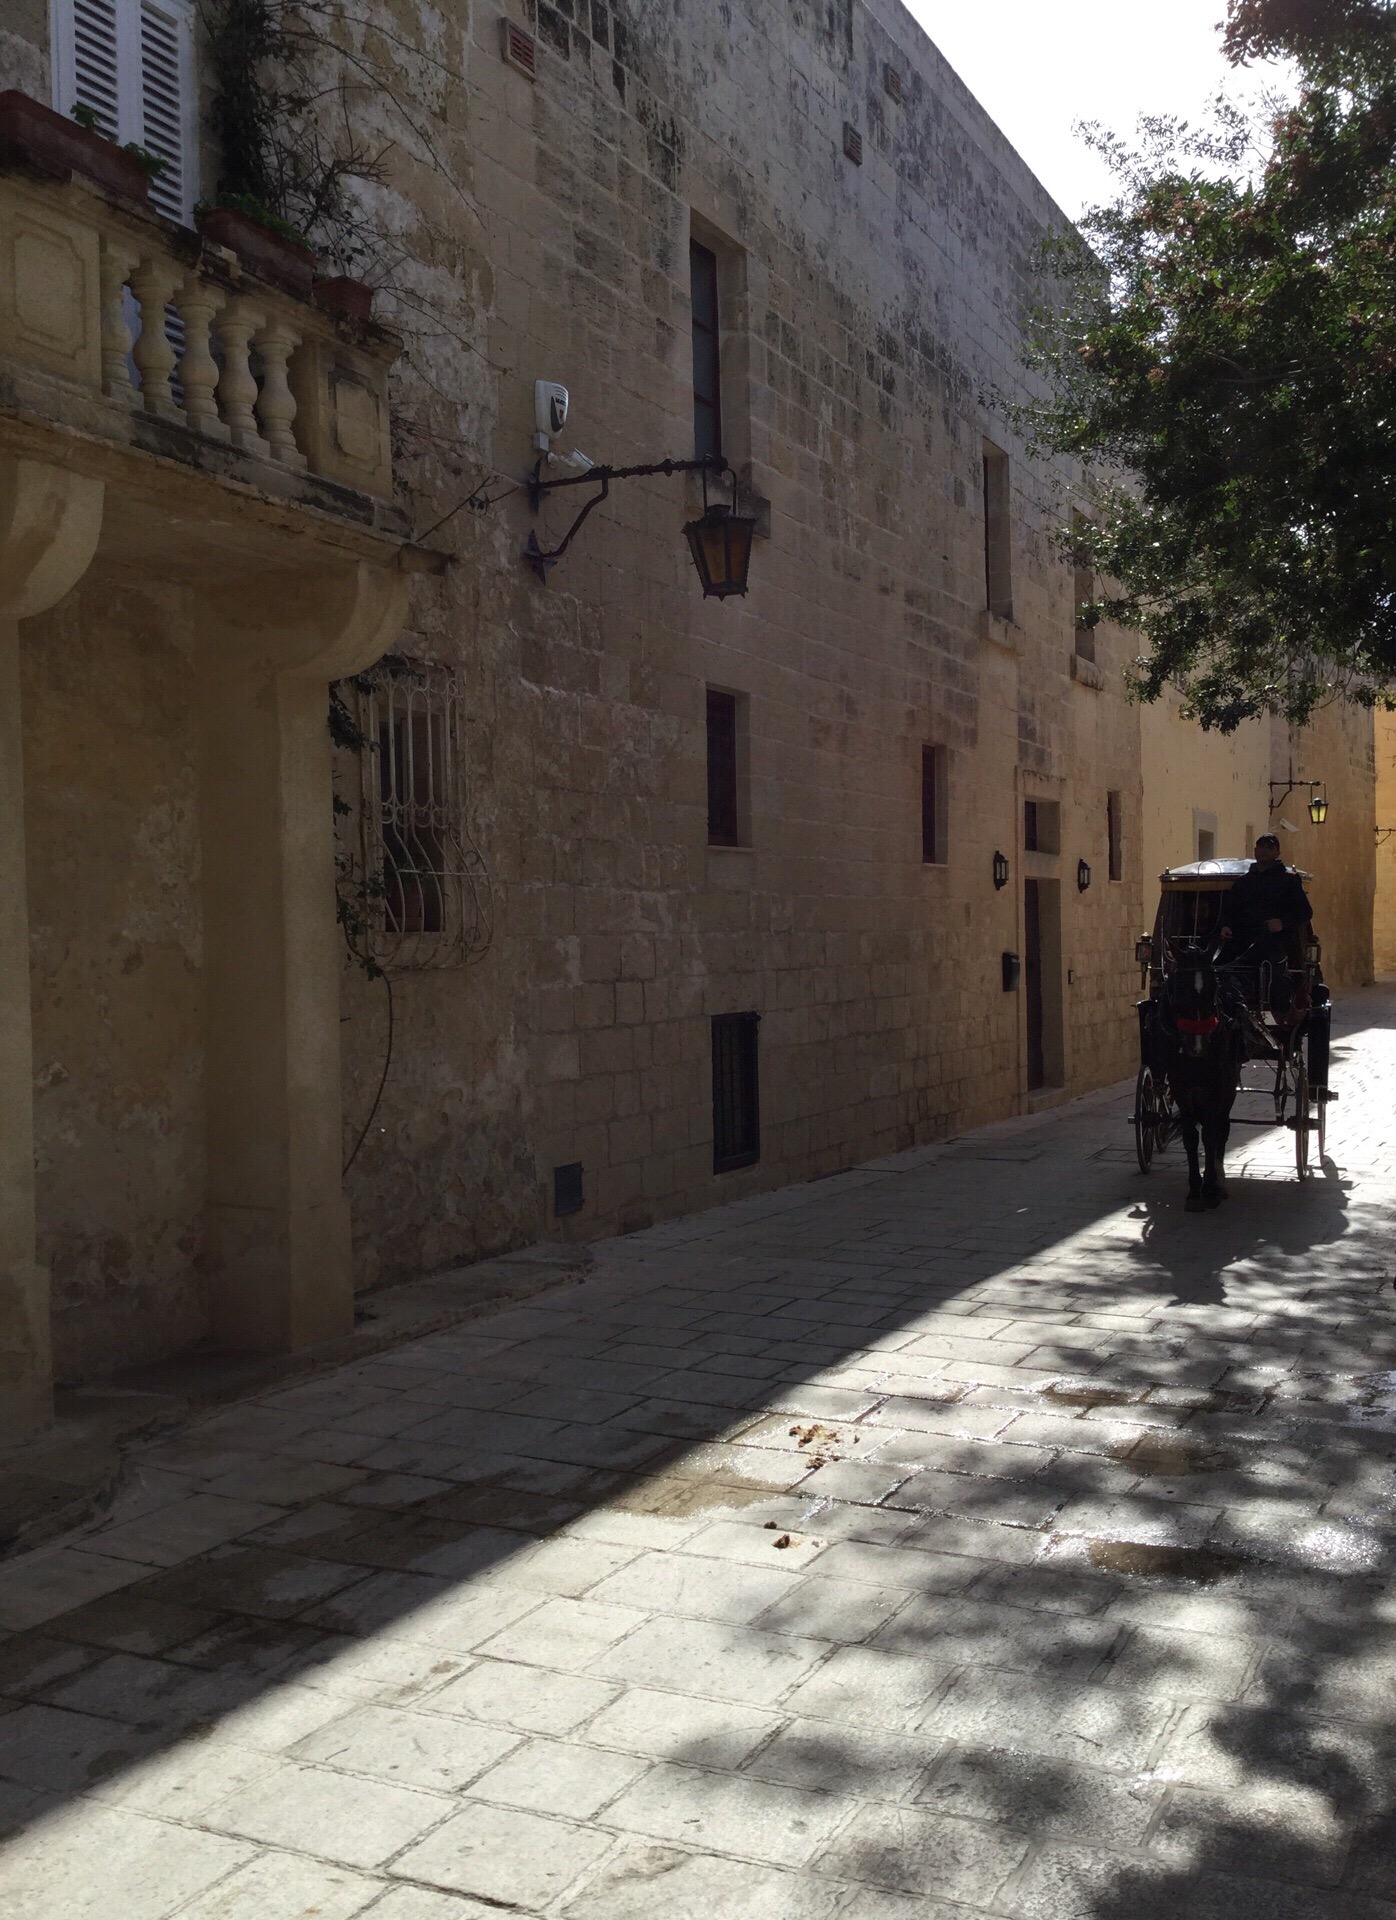 这是马耳他的重要古城，因为权利的游戏在此取景使此地成为网红。这个城很安静，很有历史特色，如果资金不是